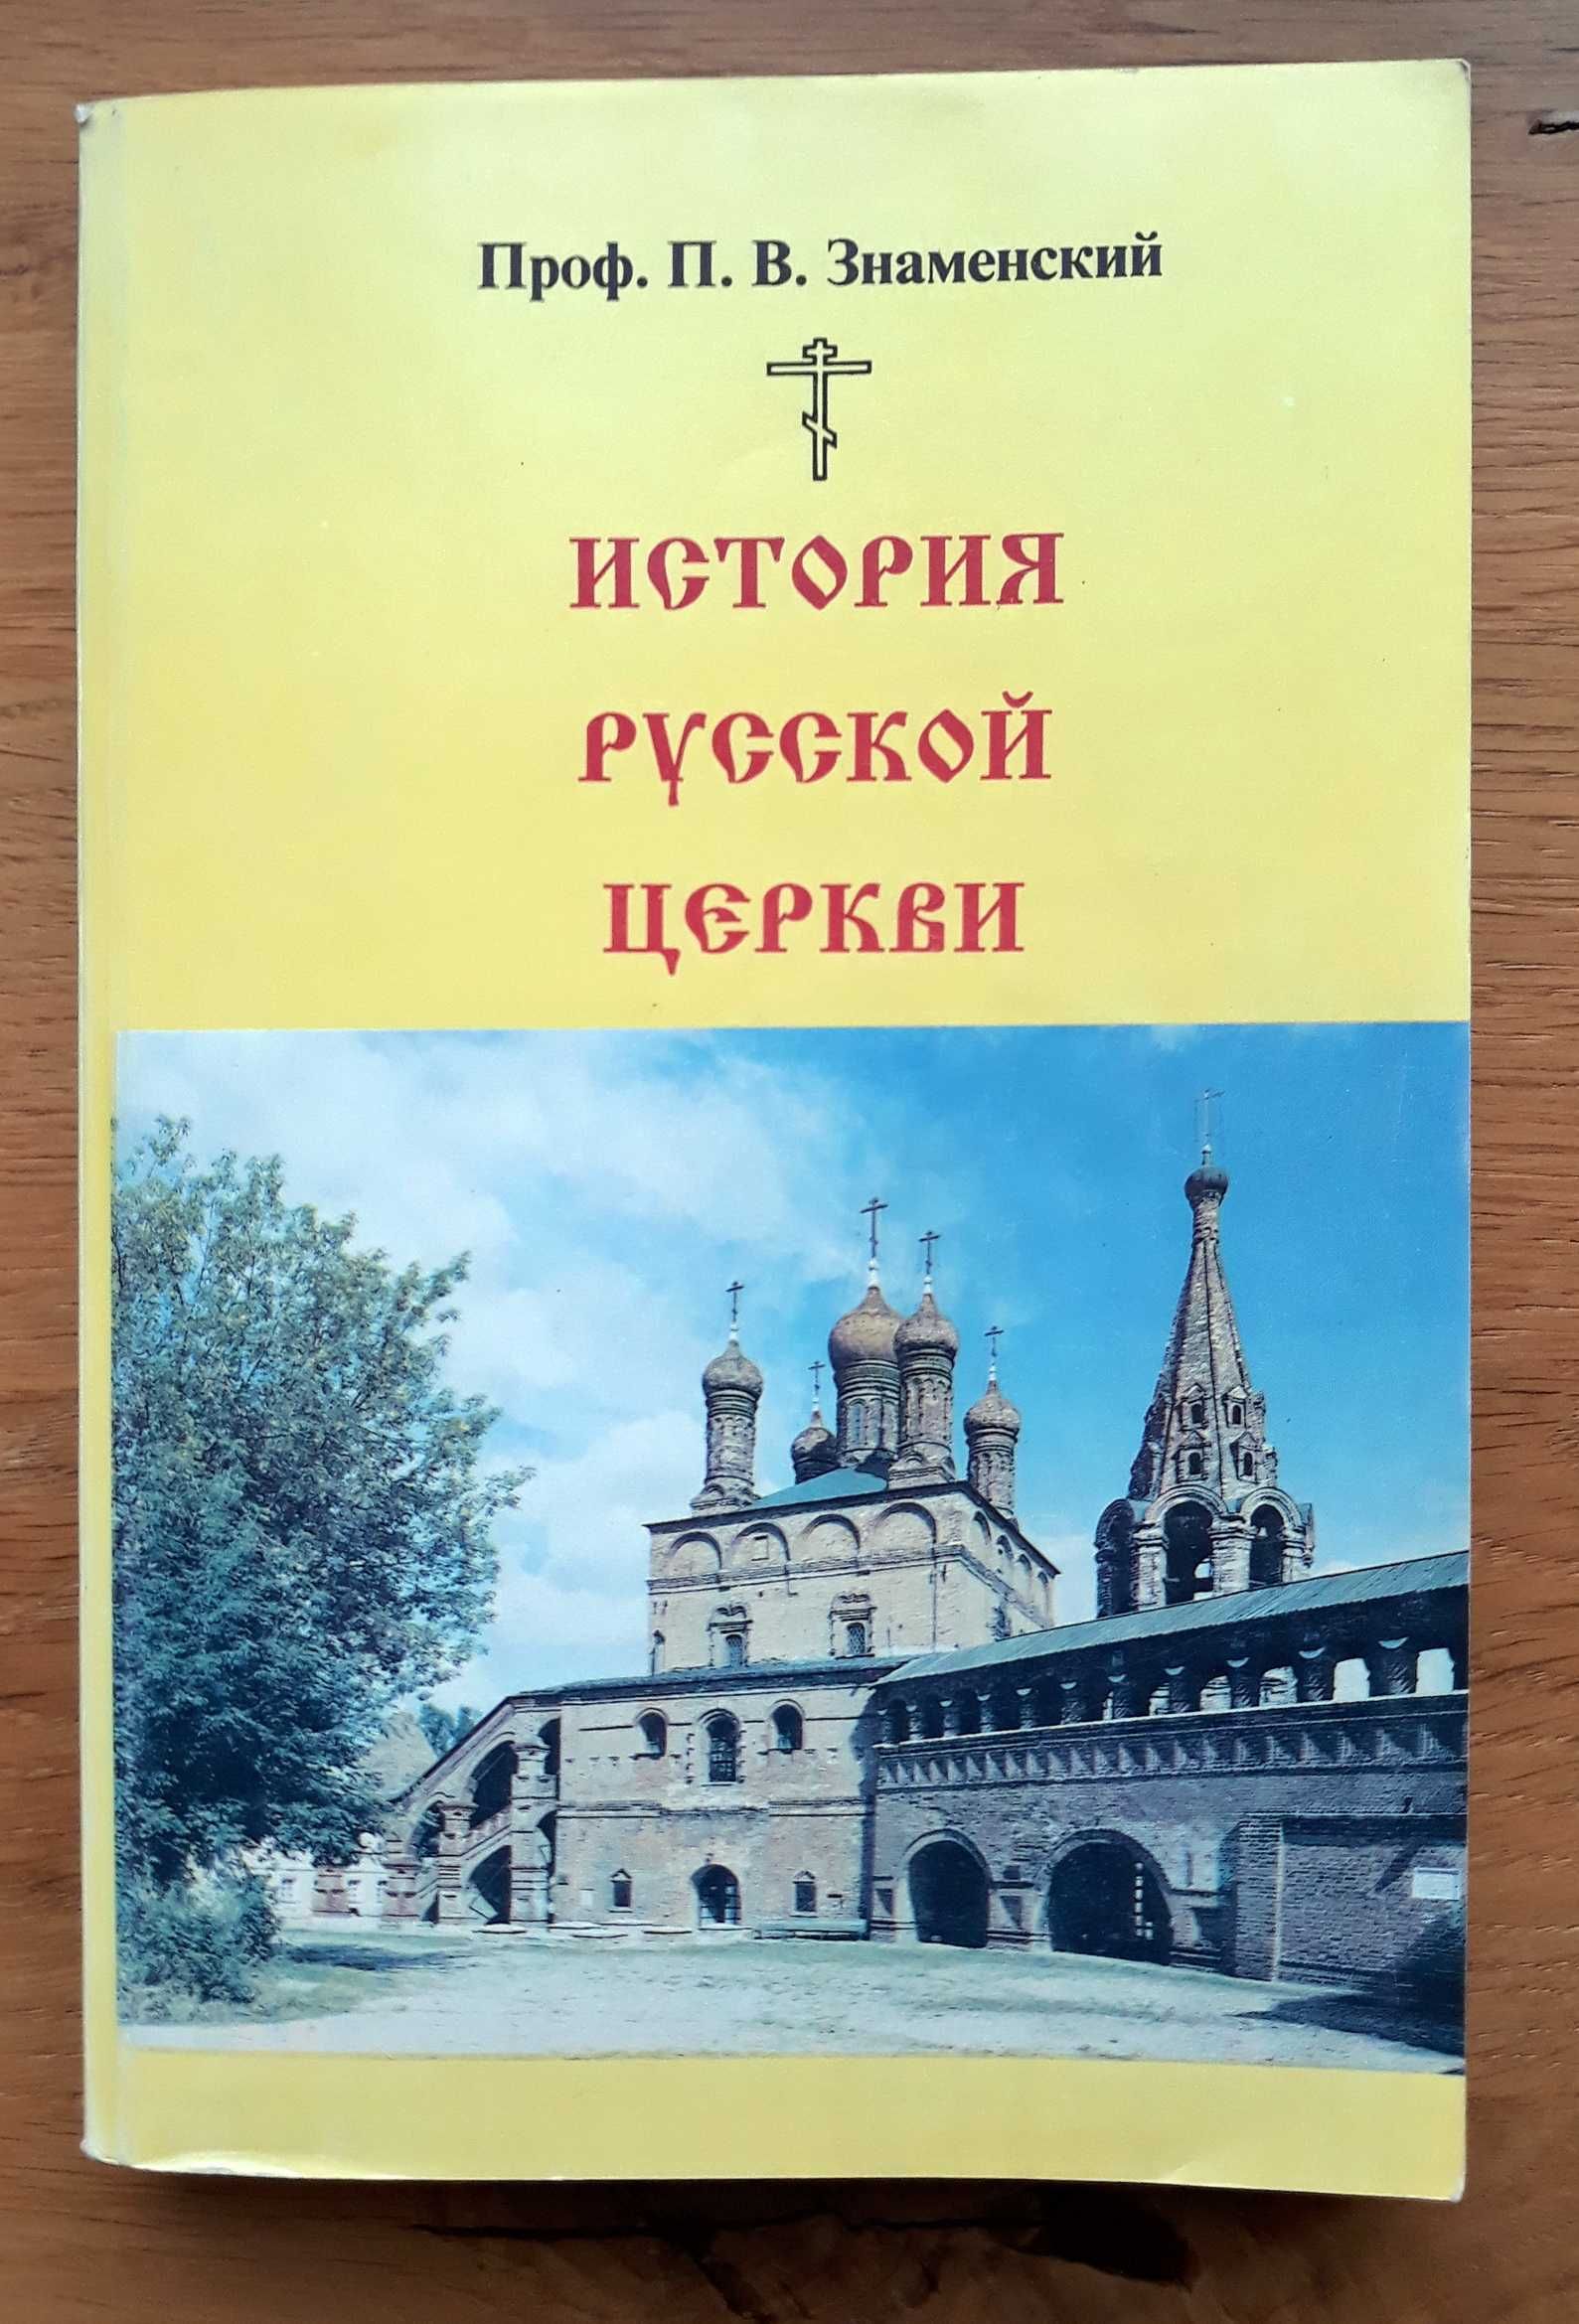 П.В. Знаменский. “История Русской Церкви”